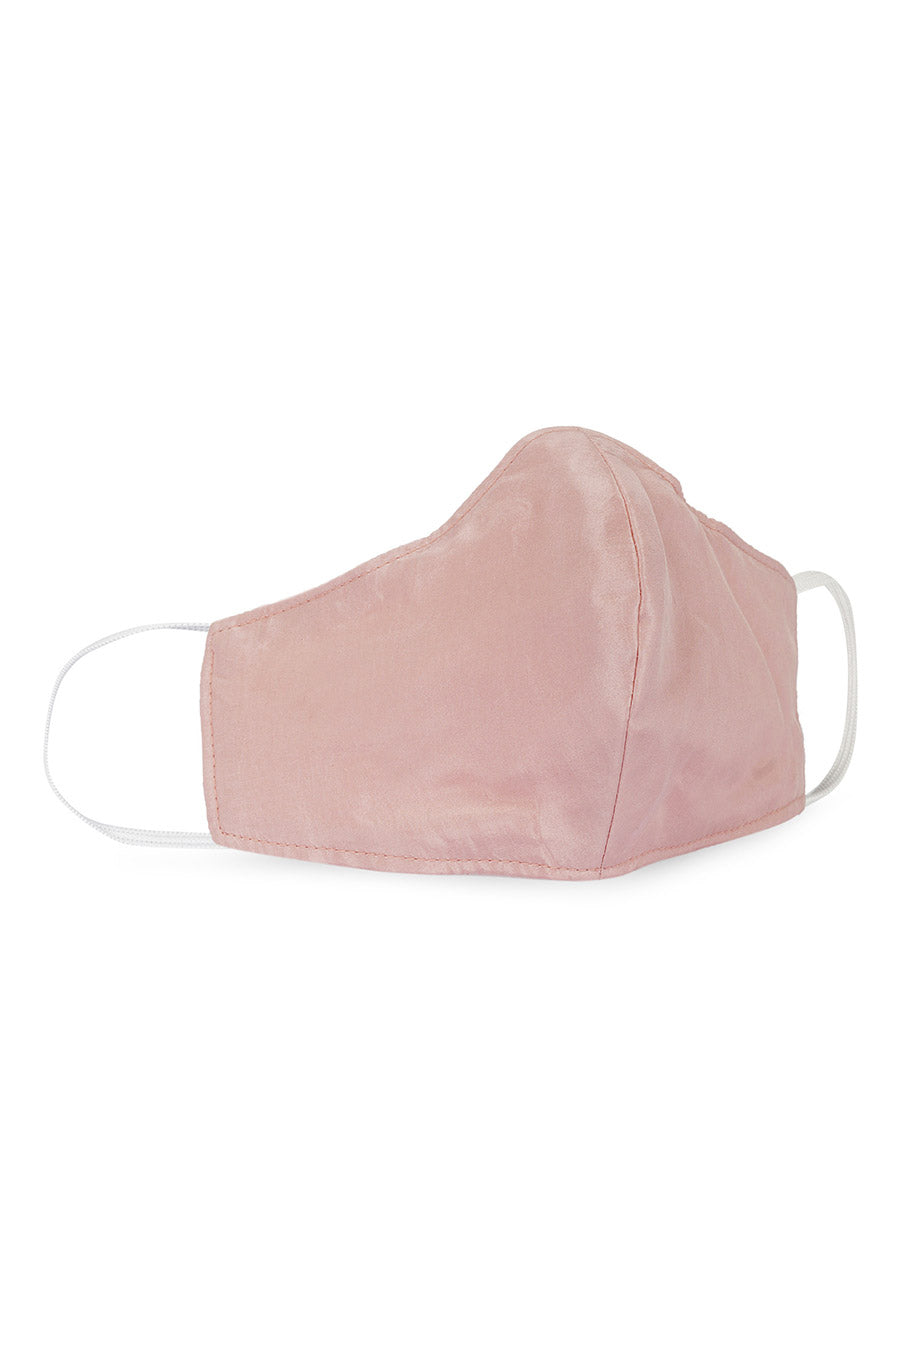 Blush Pink Silk 3 Ply Mask